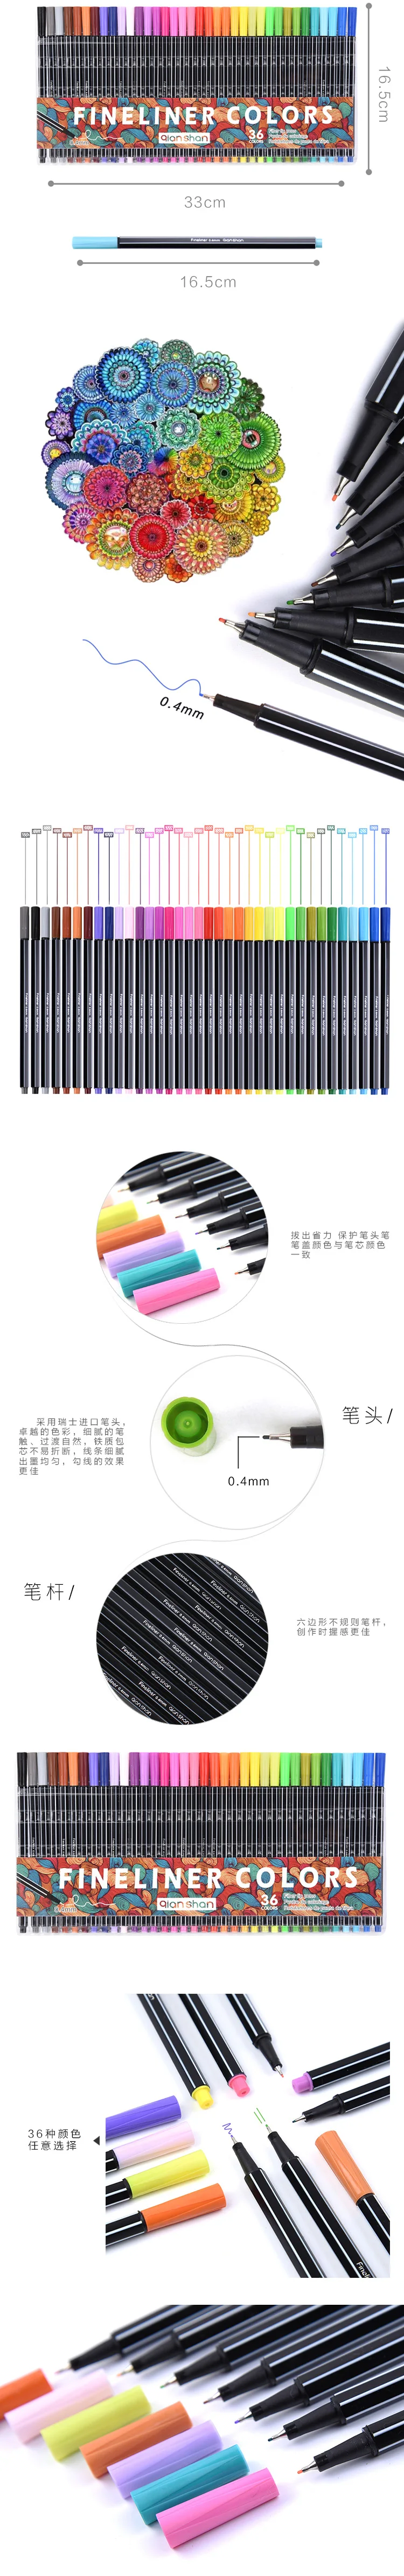 36 шт./лот(1 мешок) 0,4mm тонкий Пластик Цветной ручка-закладка искусство маркеры для рисования живопись корейский канцелярские творческие принадлежности